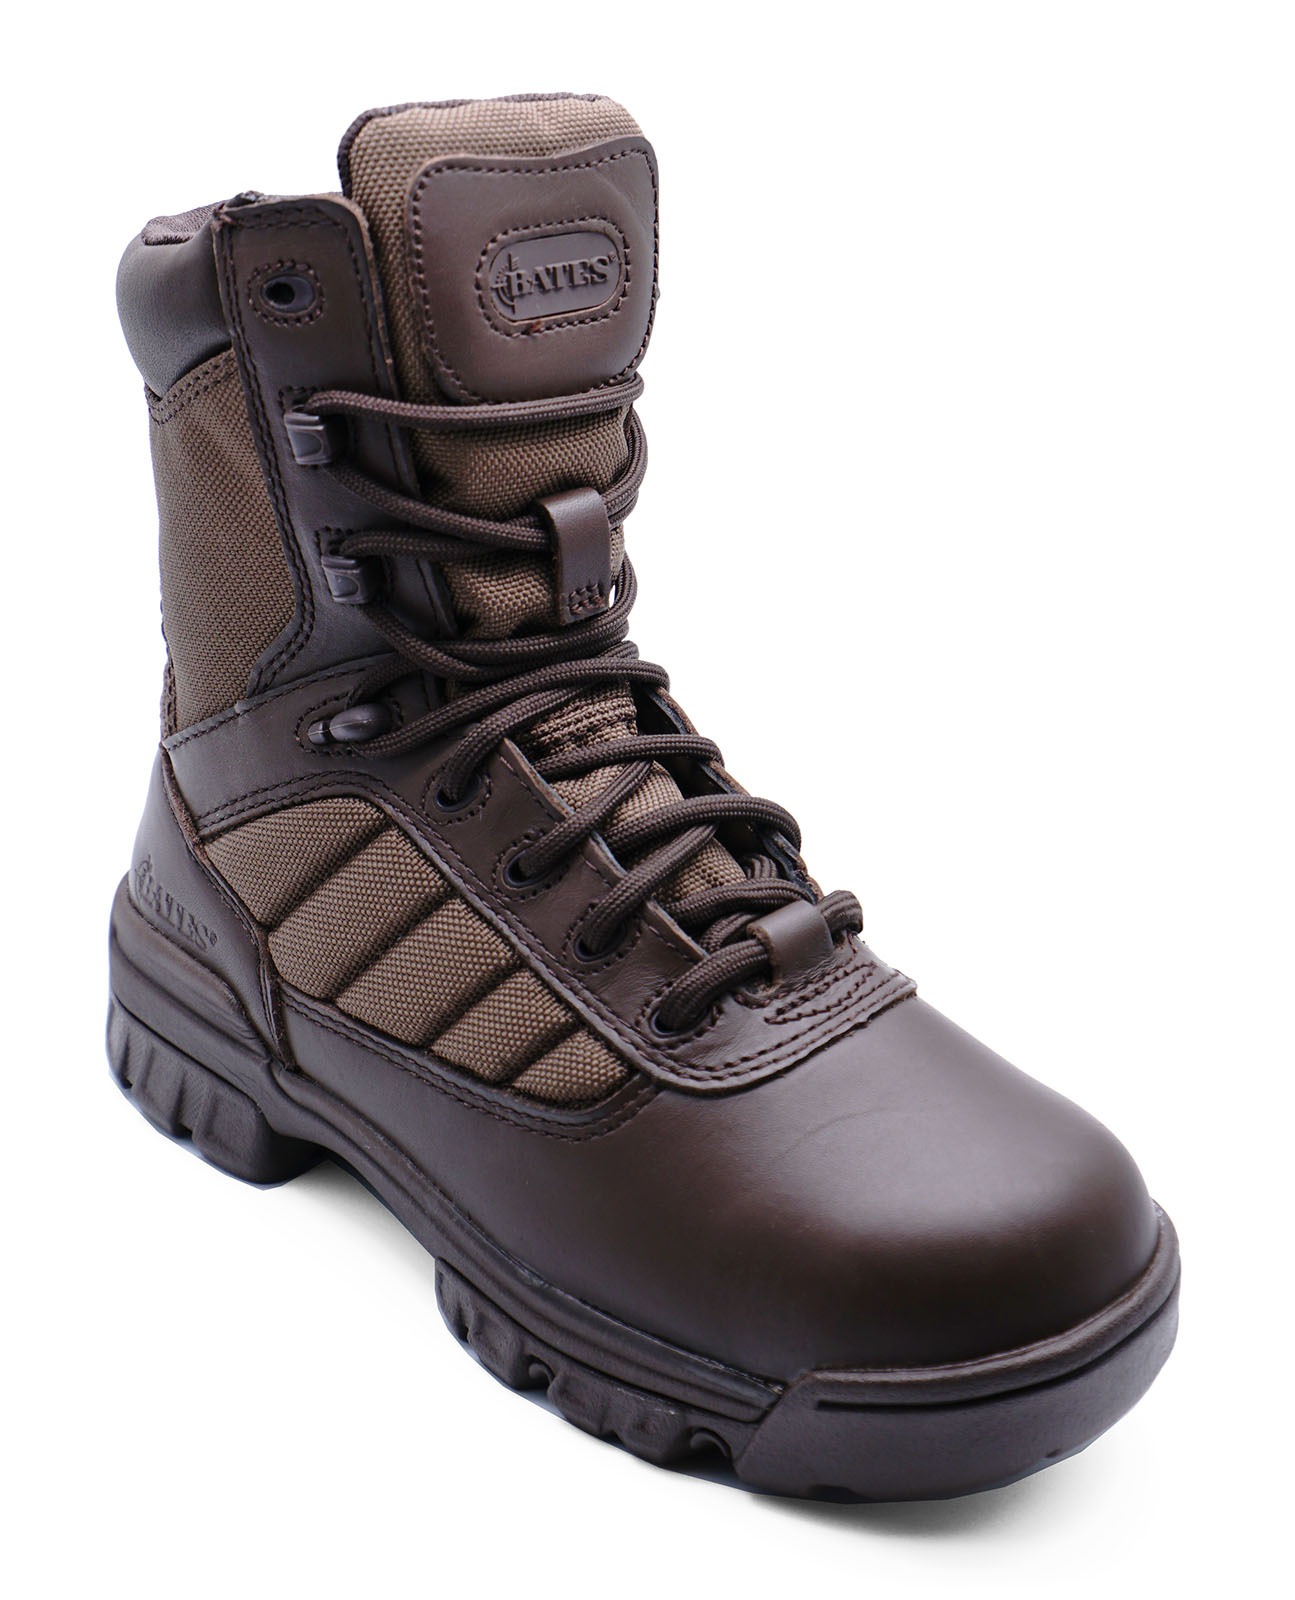 combat boots size 3